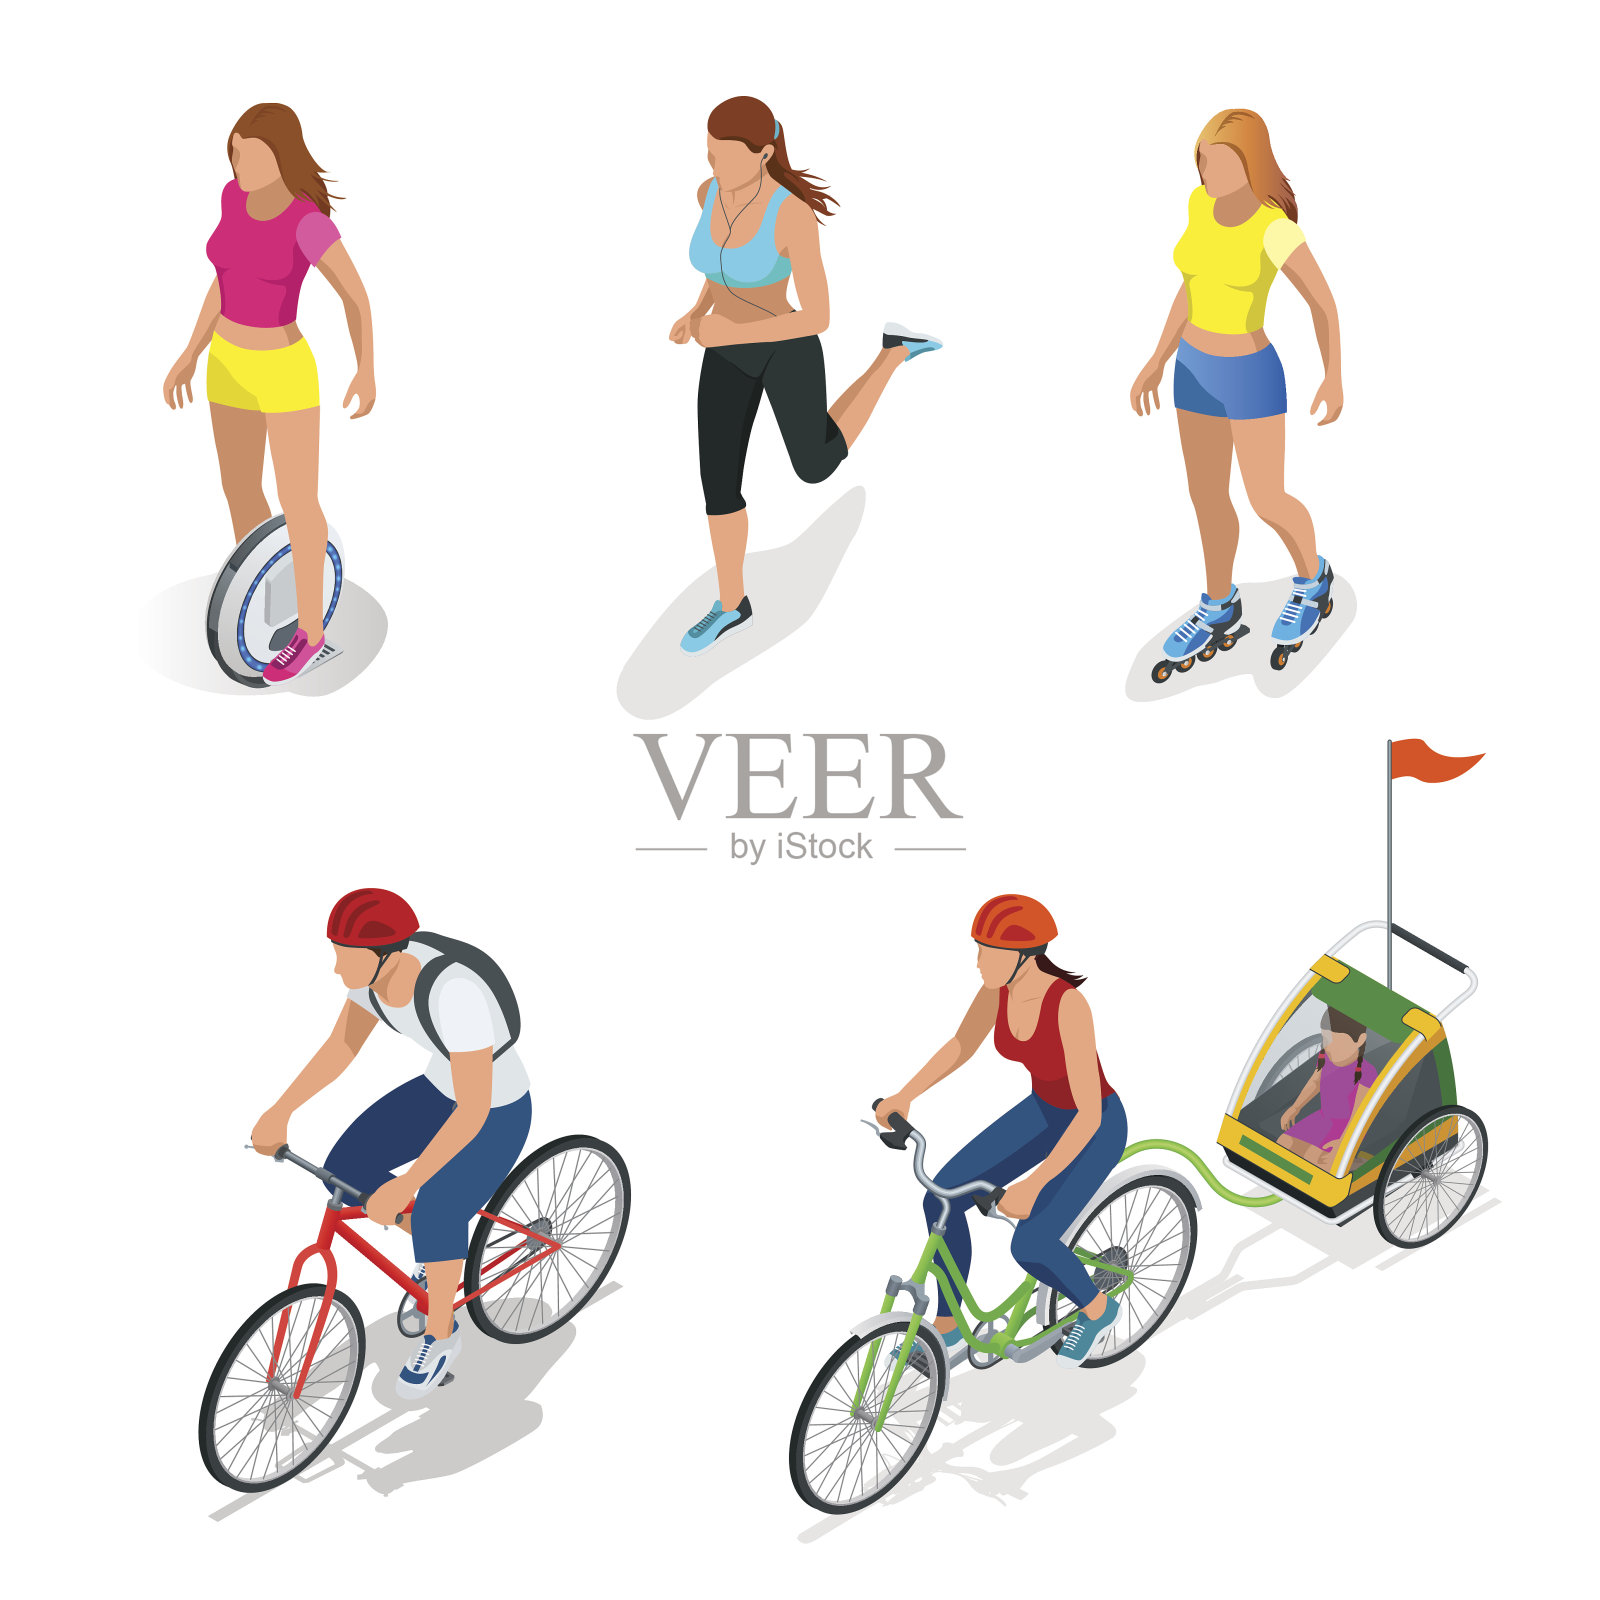 等距的自行车。家人骑自行车的人。轮滑的女孩。插画图片素材